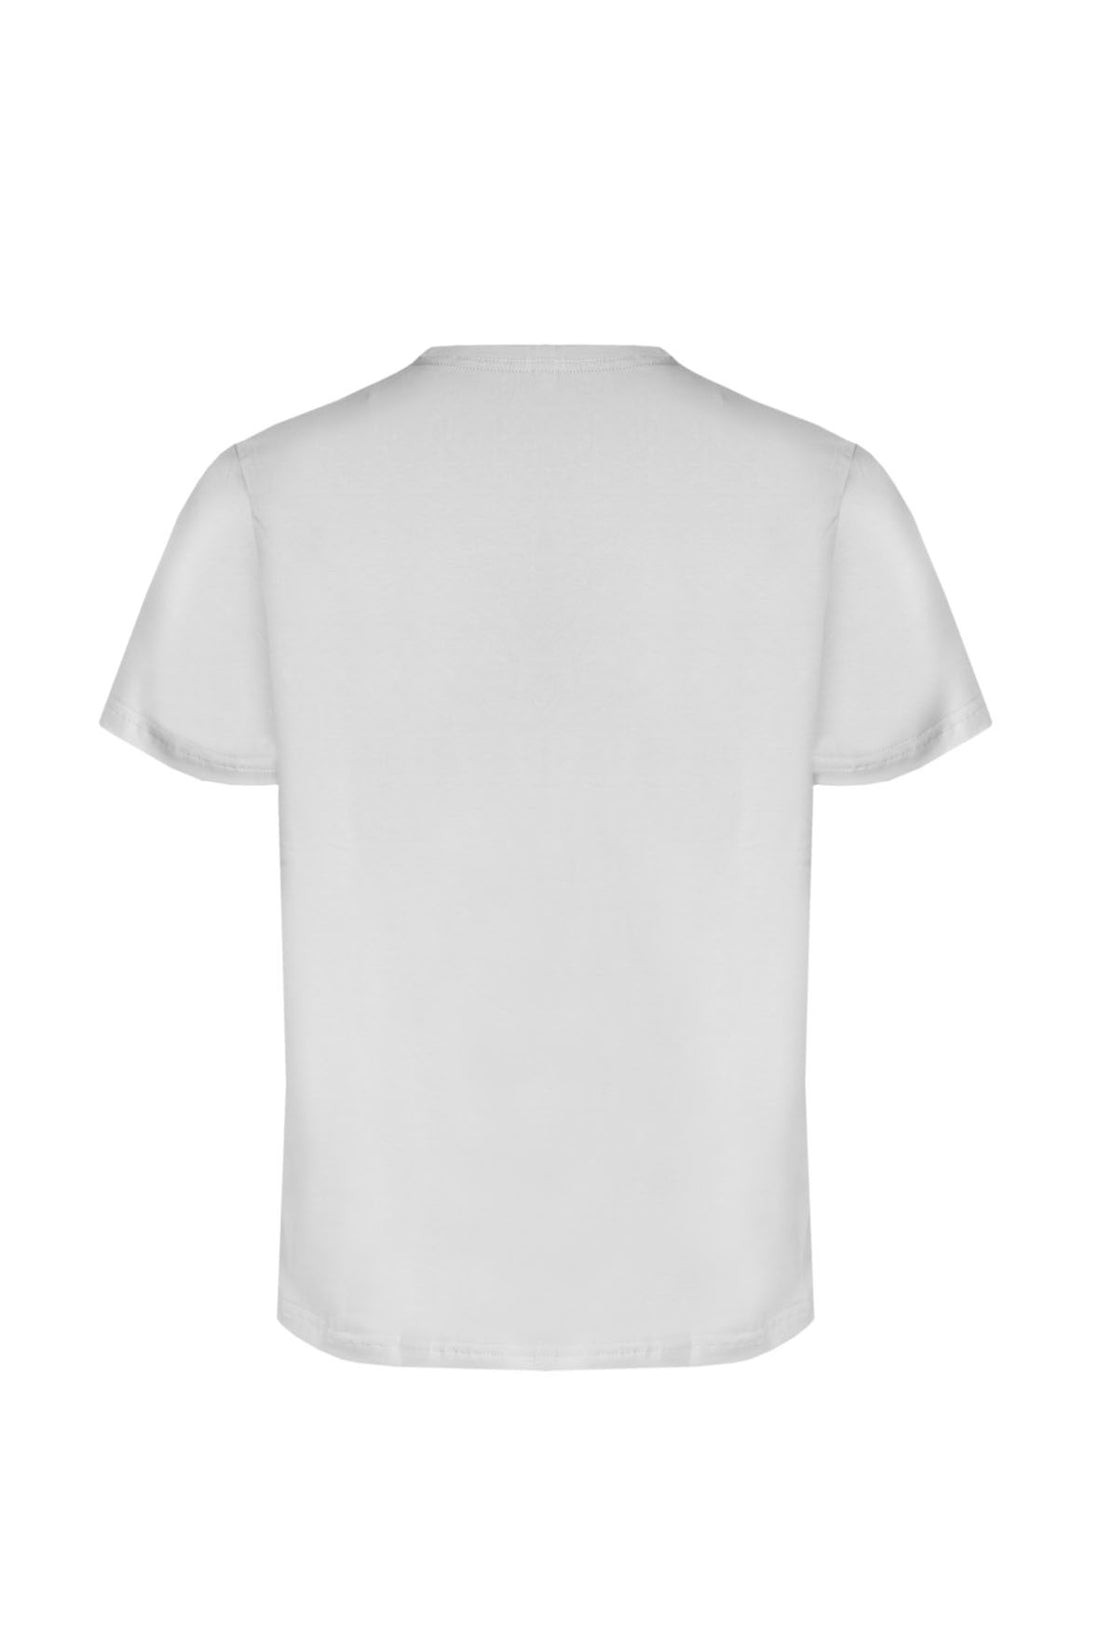 T-Shirt Elastica con Stampa Petto Primo Emporio - Bianco